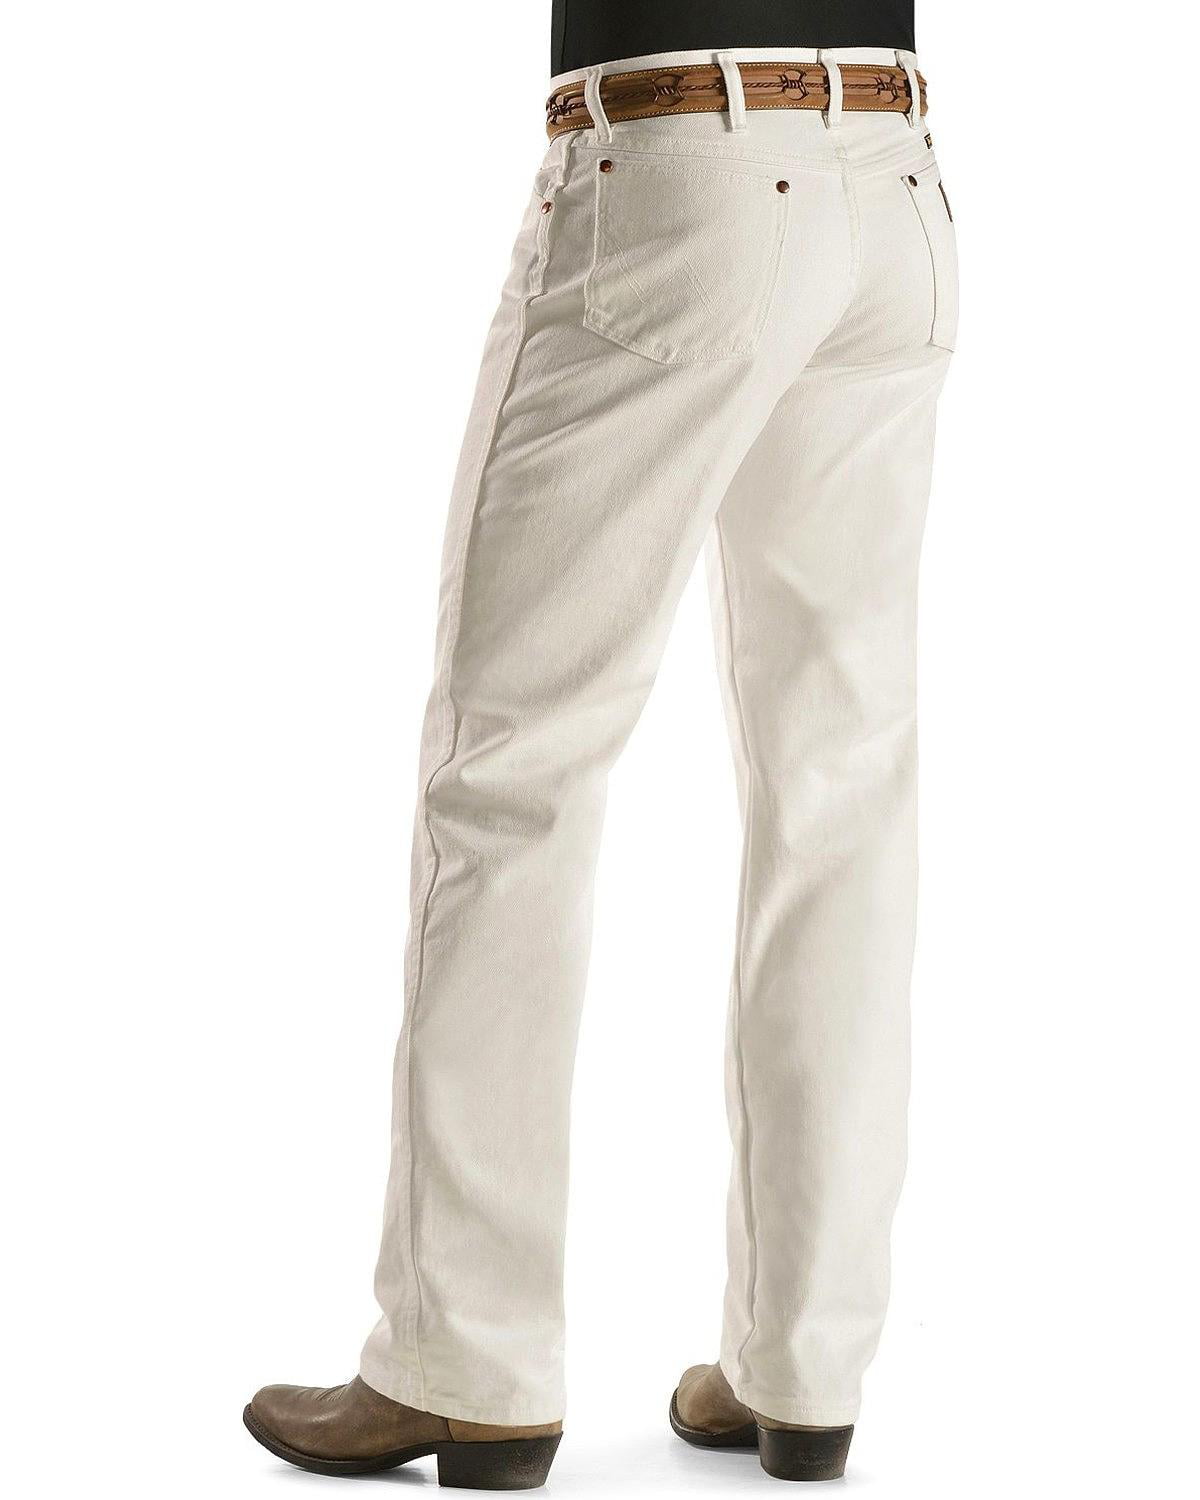 white wrangler jeans